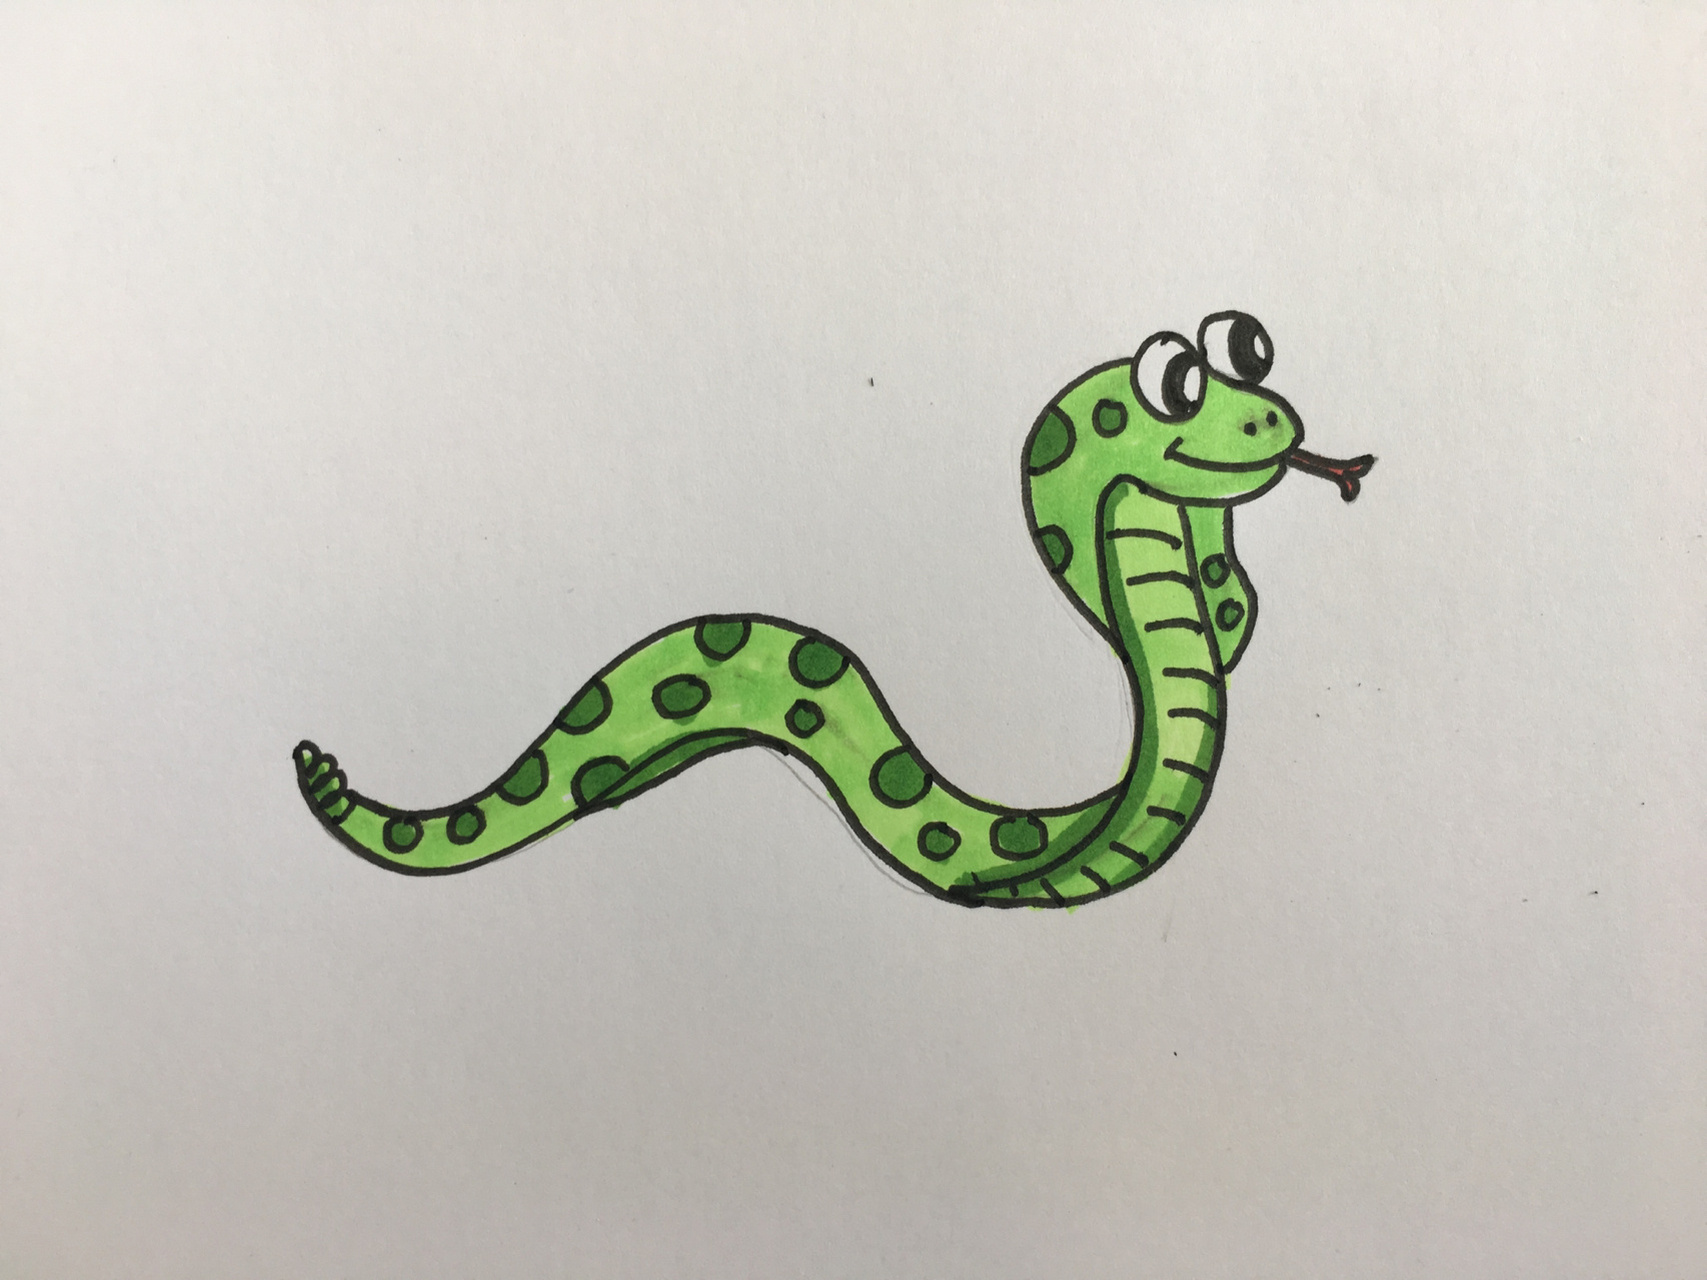 简笔画蛇可爱动物图片